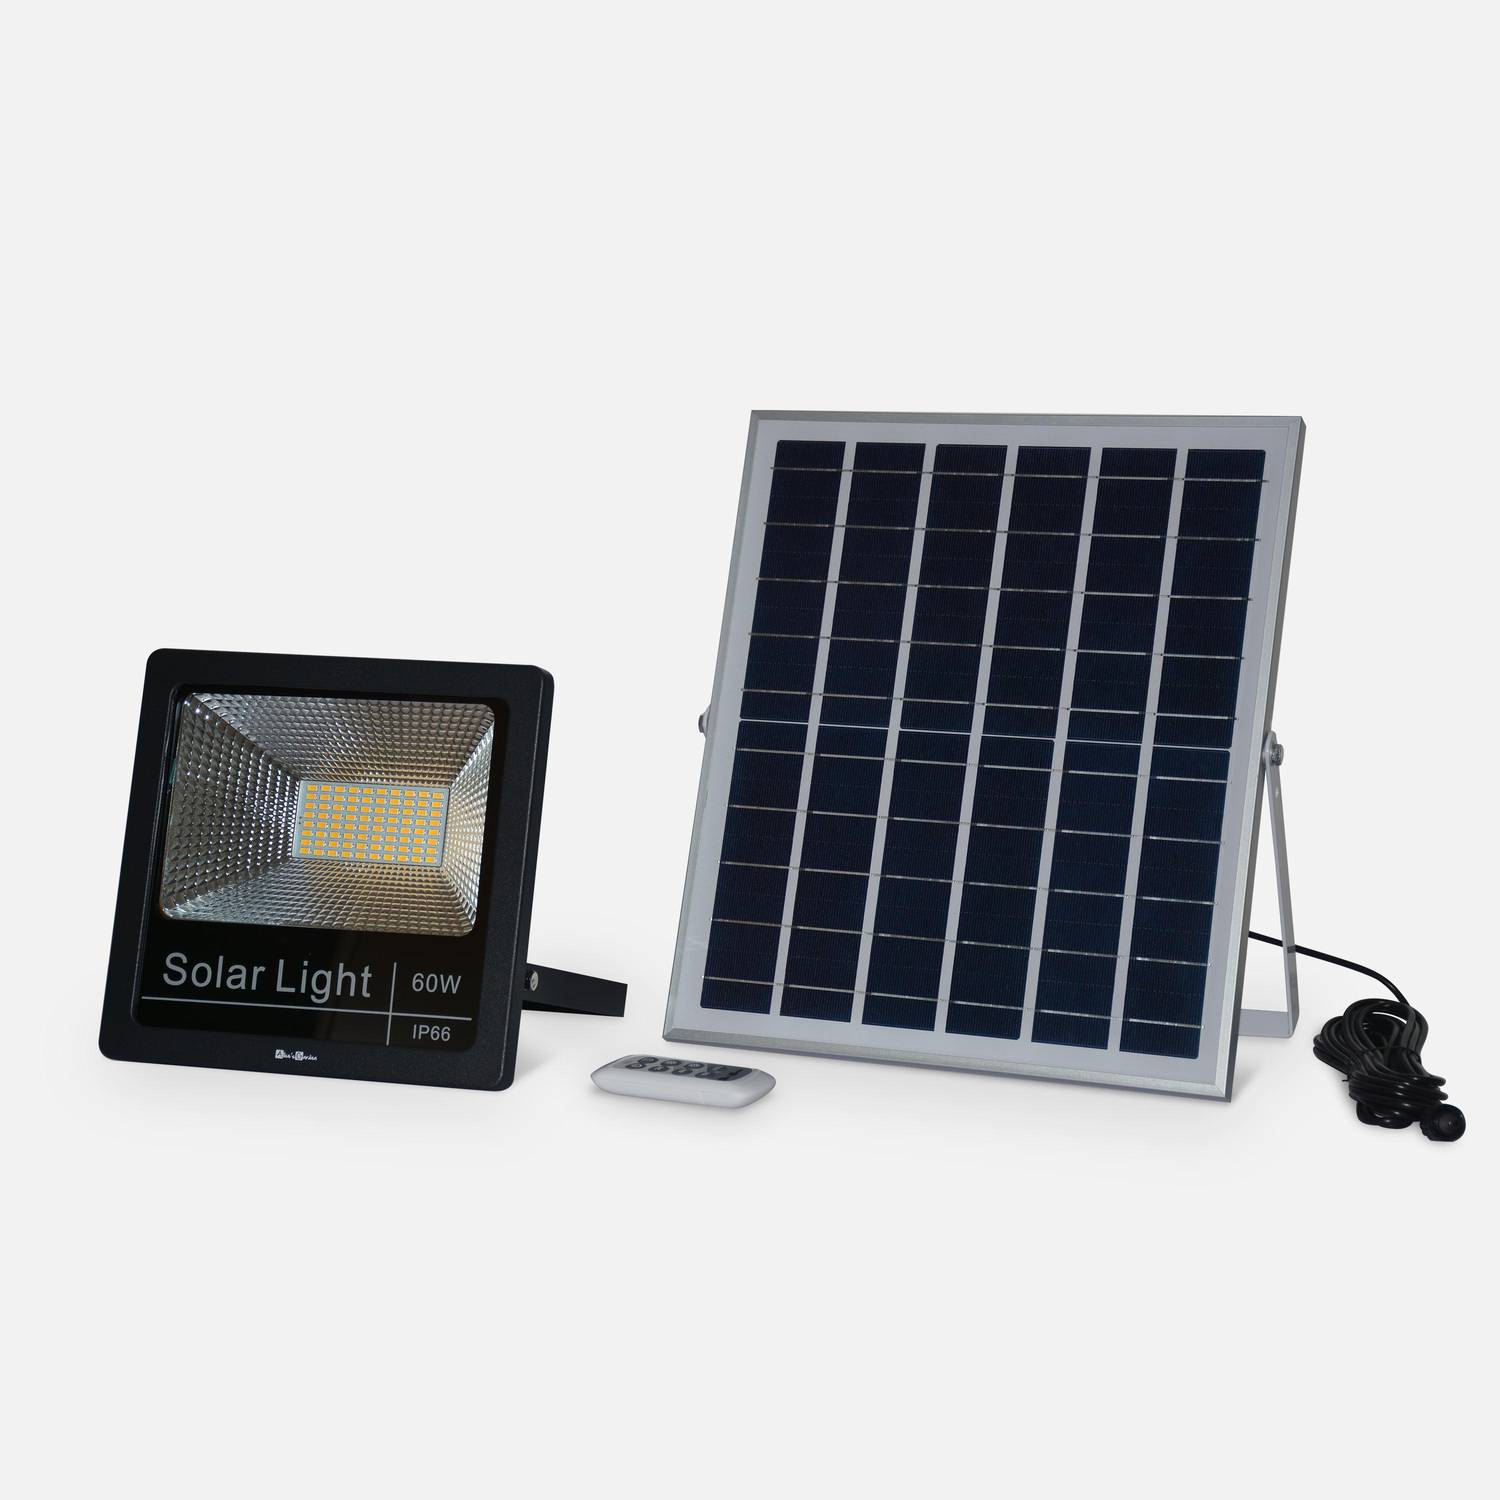 Projecteur solaire LED 40W avec panneau solaire télécommandé blanc froid, lampe résistante à la pluie et autonome, spot extra puissant 1500 lumens équivalent 125W Photo1